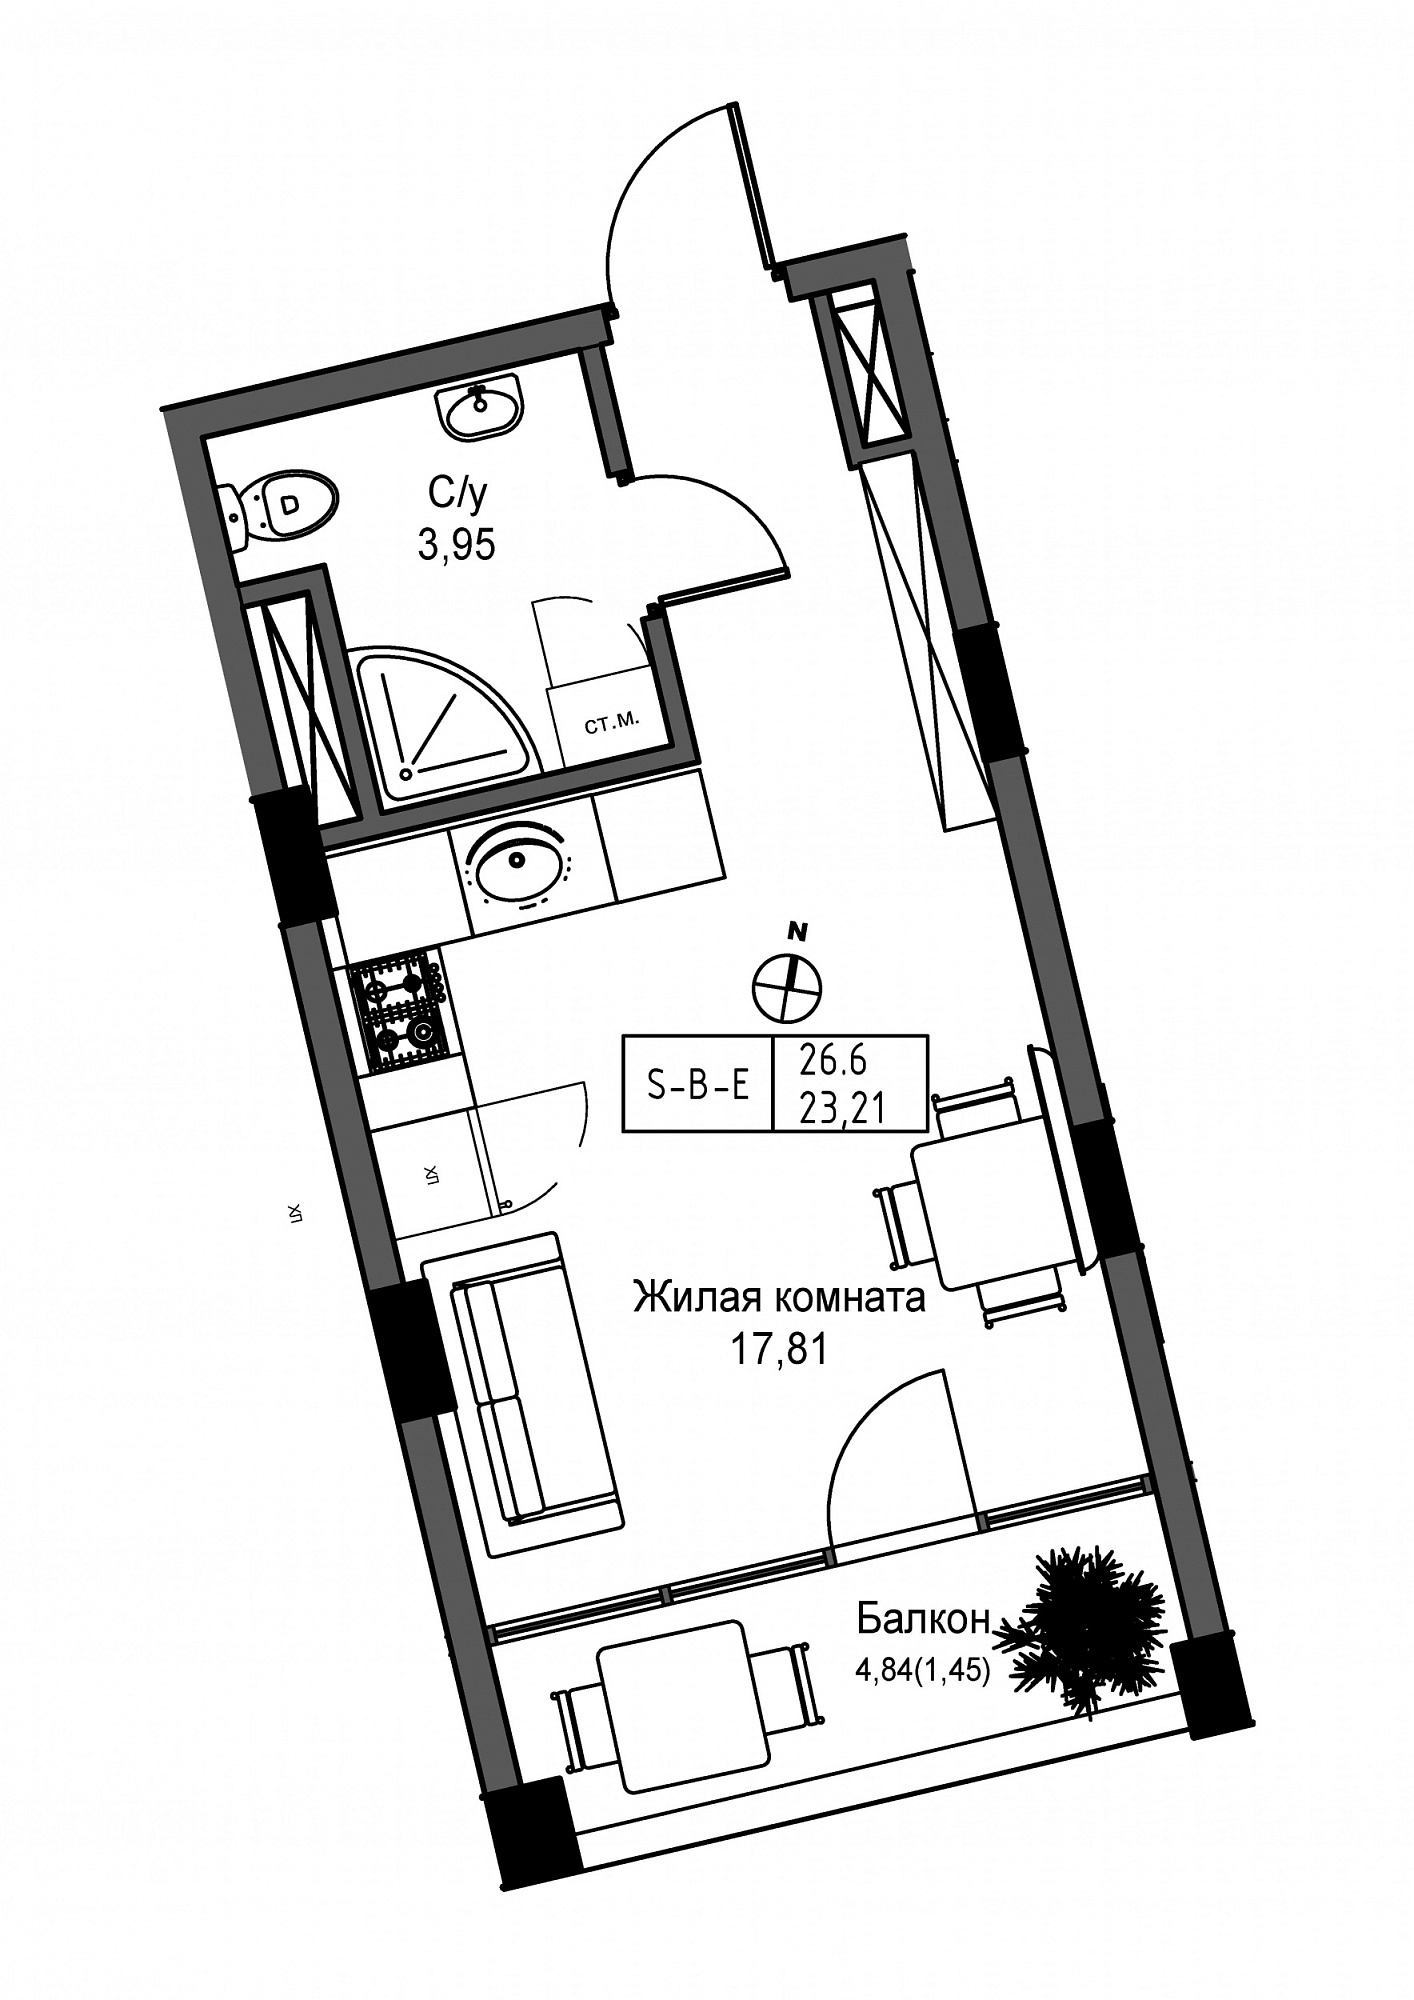 Планировка Smart-квартира площей 23.21м2, UM-004-04/0009.